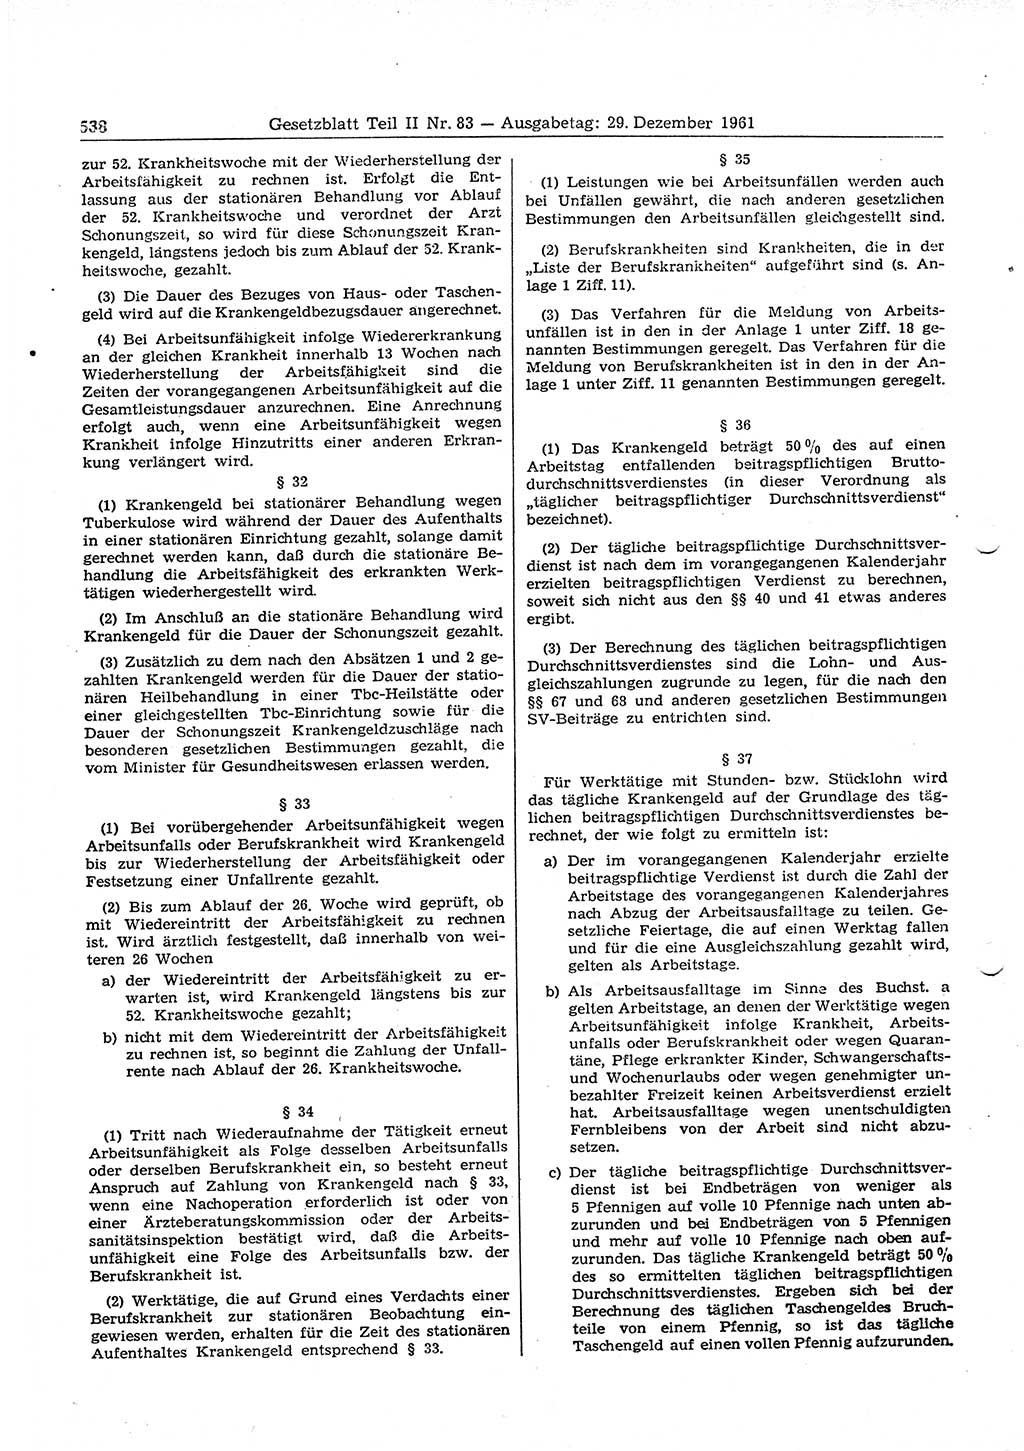 Gesetzblatt (GBl.) der Deutschen Demokratischen Republik (DDR) Teil ⅠⅠ 1961, Seite 538 (GBl. DDR ⅠⅠ 1961, S. 538)